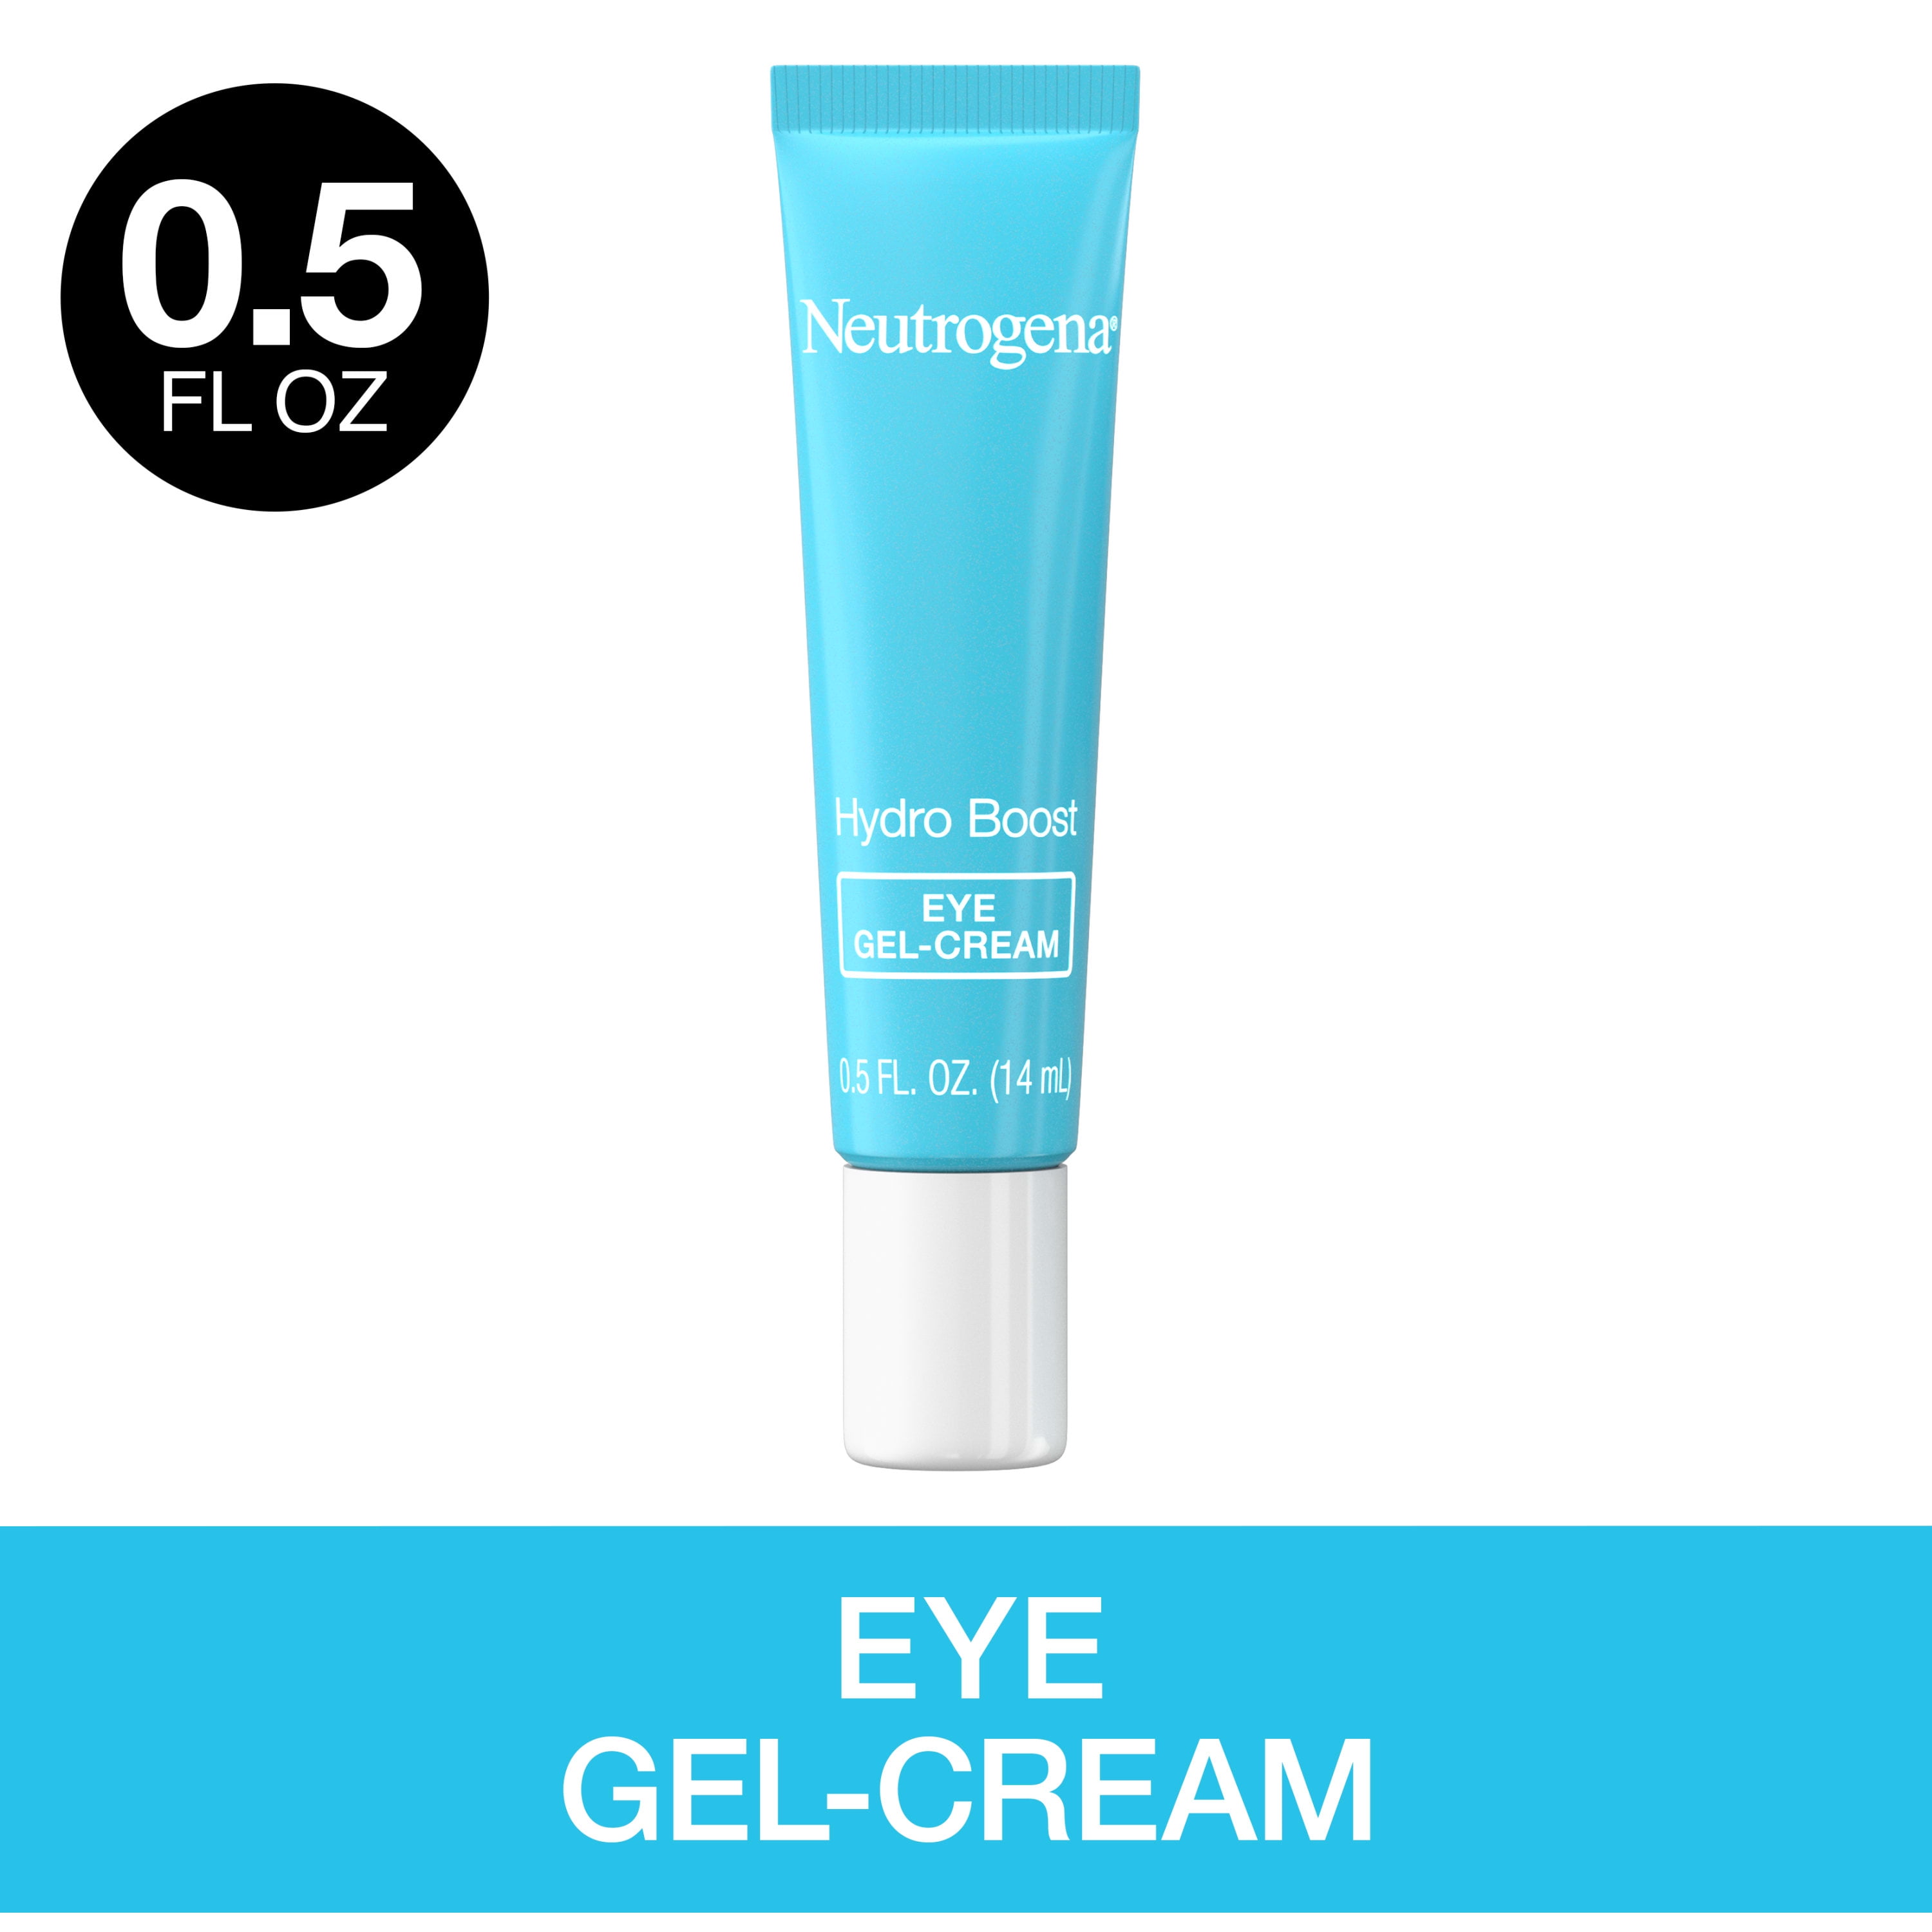 Neutrogena Hydro Boost Daily Hyaluronic Acid Gel Eye Cream, 0.5 fl. oz